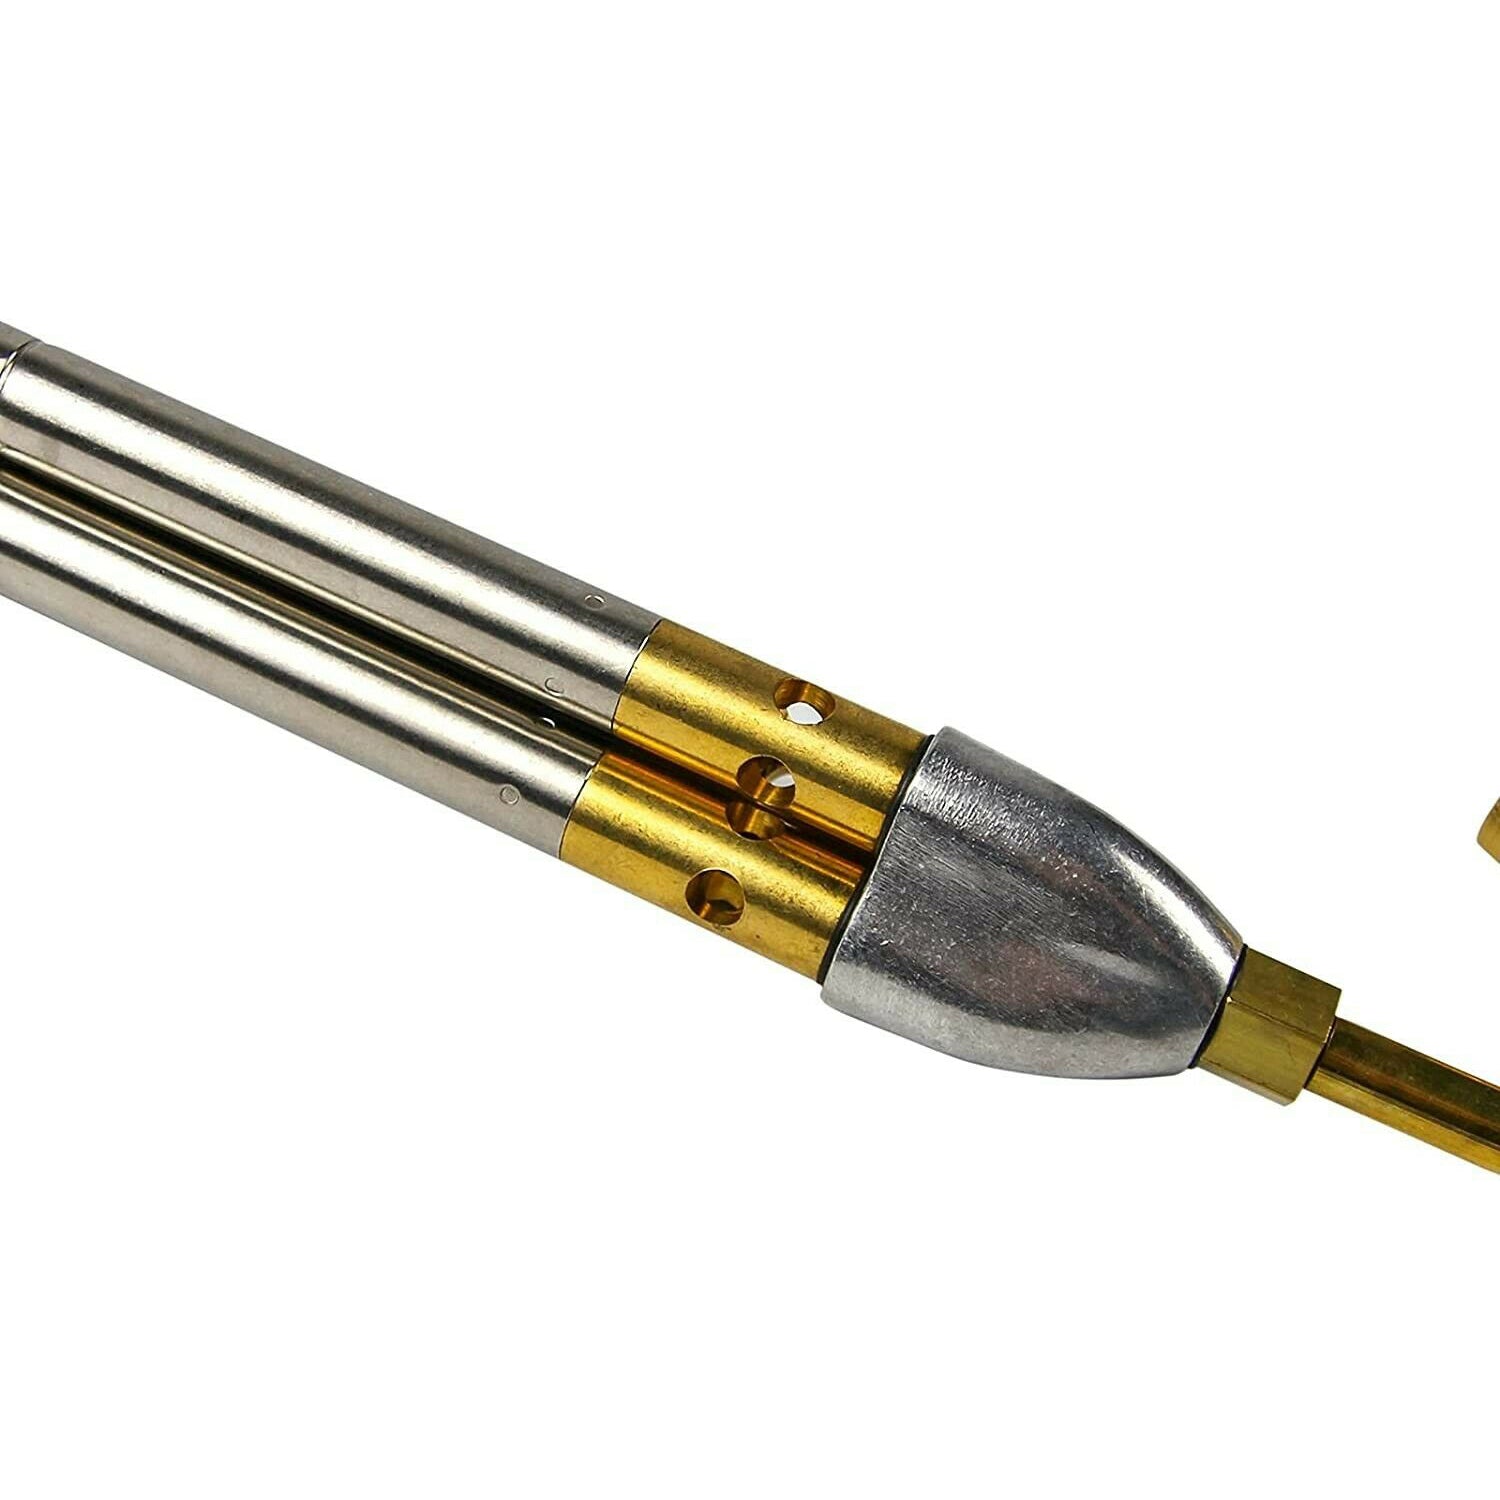 BLUEFIRE - Kit MAPP de triple llama turbo de soplete, cabezal de boquilla  de soldadura de gas de encendido manual para soldadura de tubos de cobre de